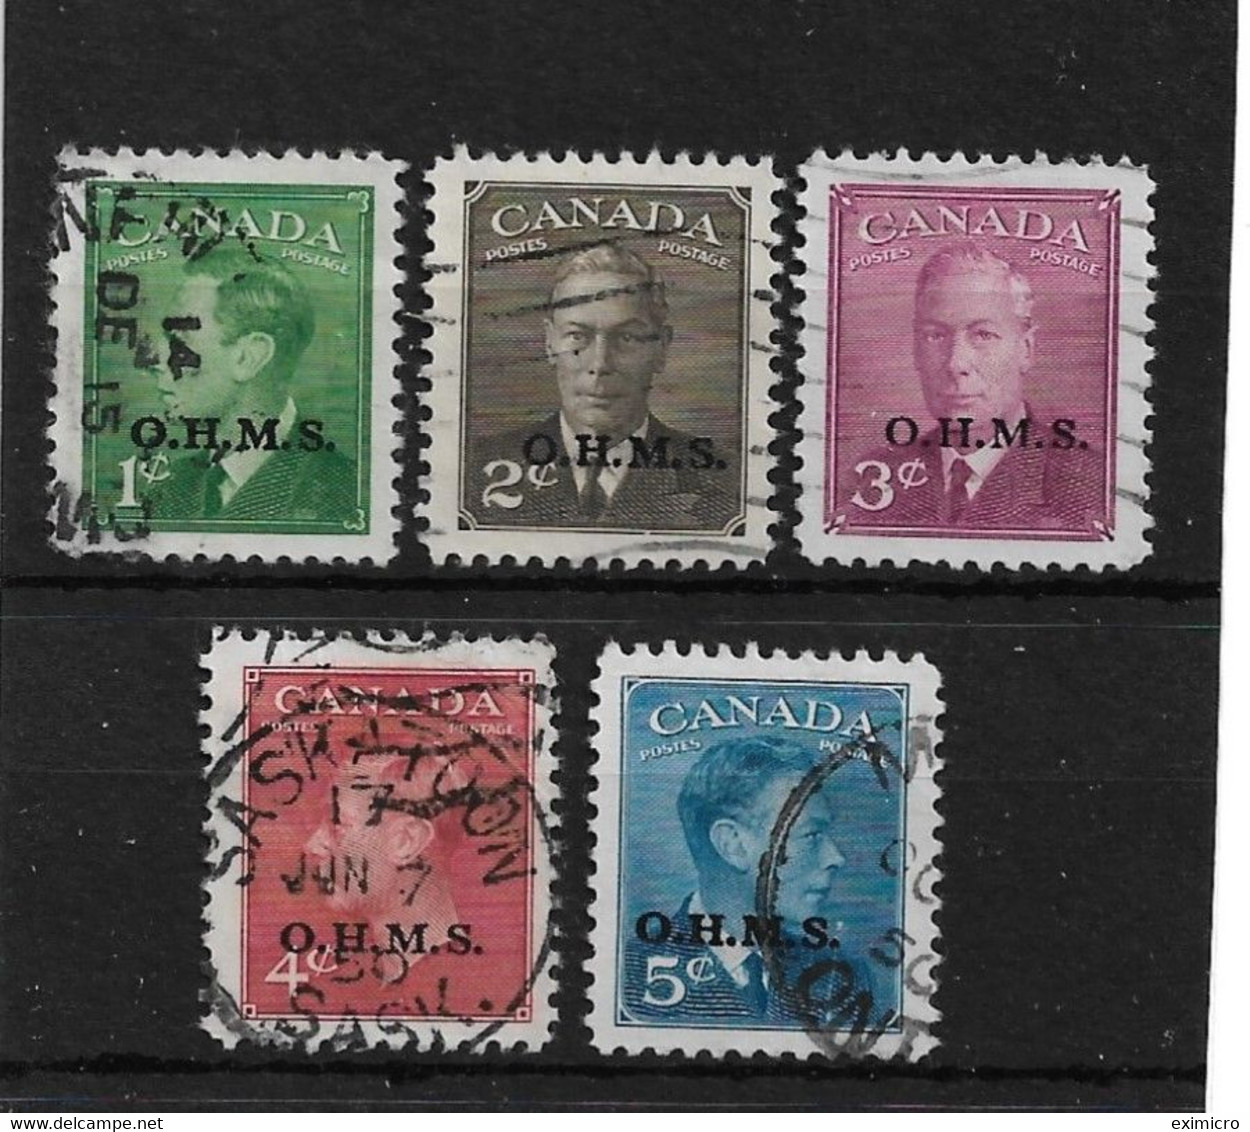 CANADA 1949 O.H.M.S. OFFICIALS SET TO 5c SG O172/O176 FINE USED Cat £20+ - Aufdrucksausgaben